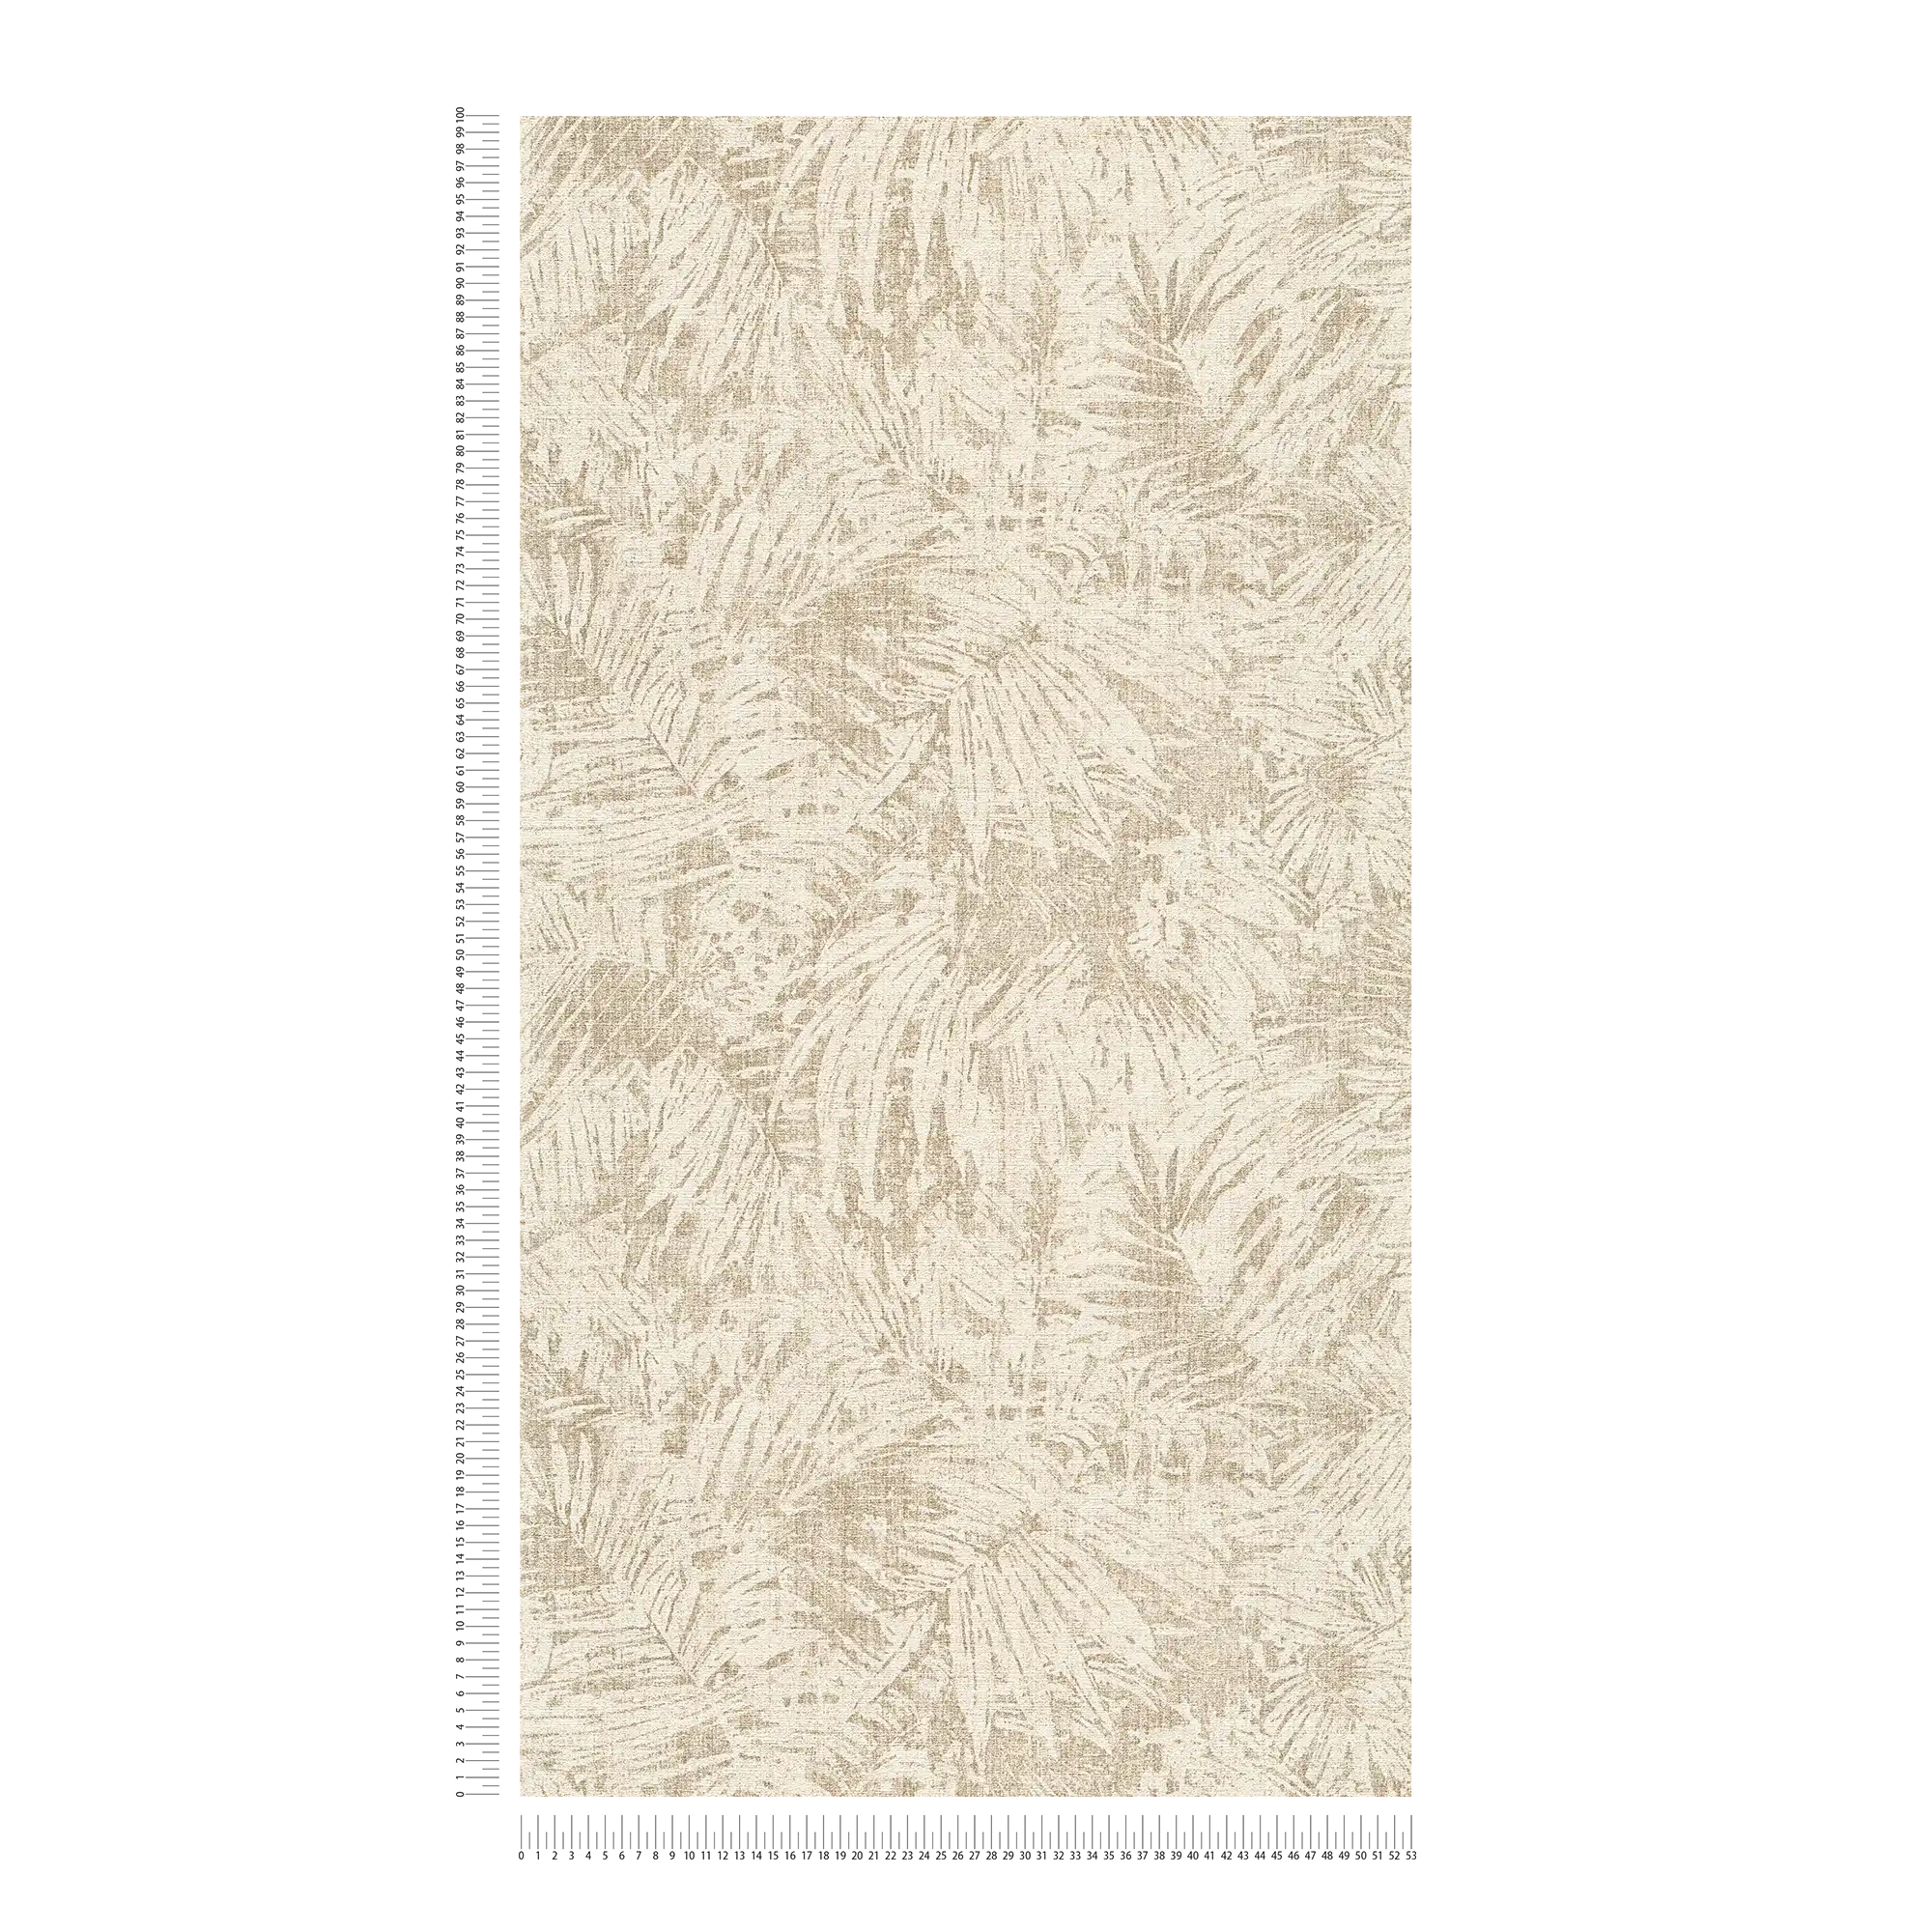             behang bladerenpatroon & linneneffect in koloniale stijl - bruin, beige
        